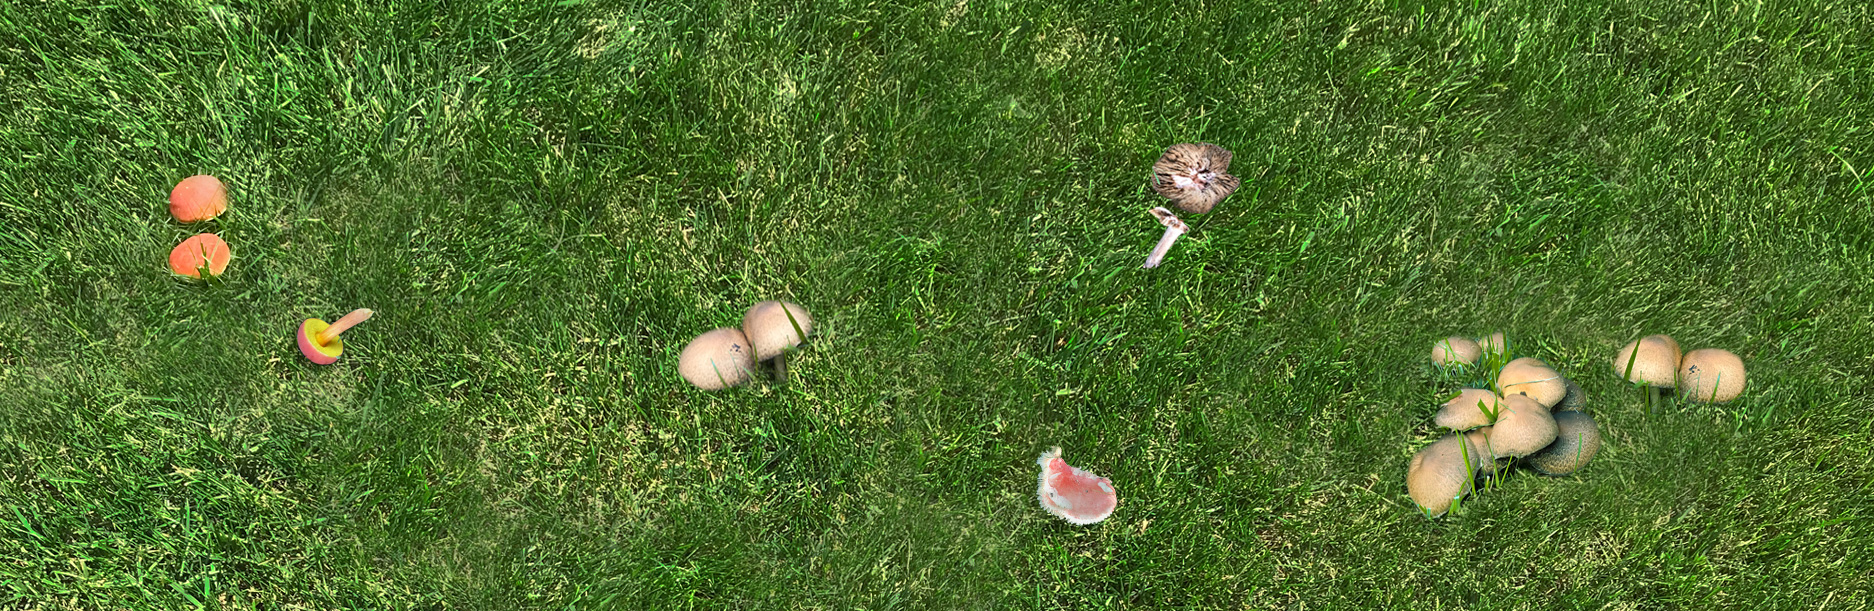 Yard mushrooms